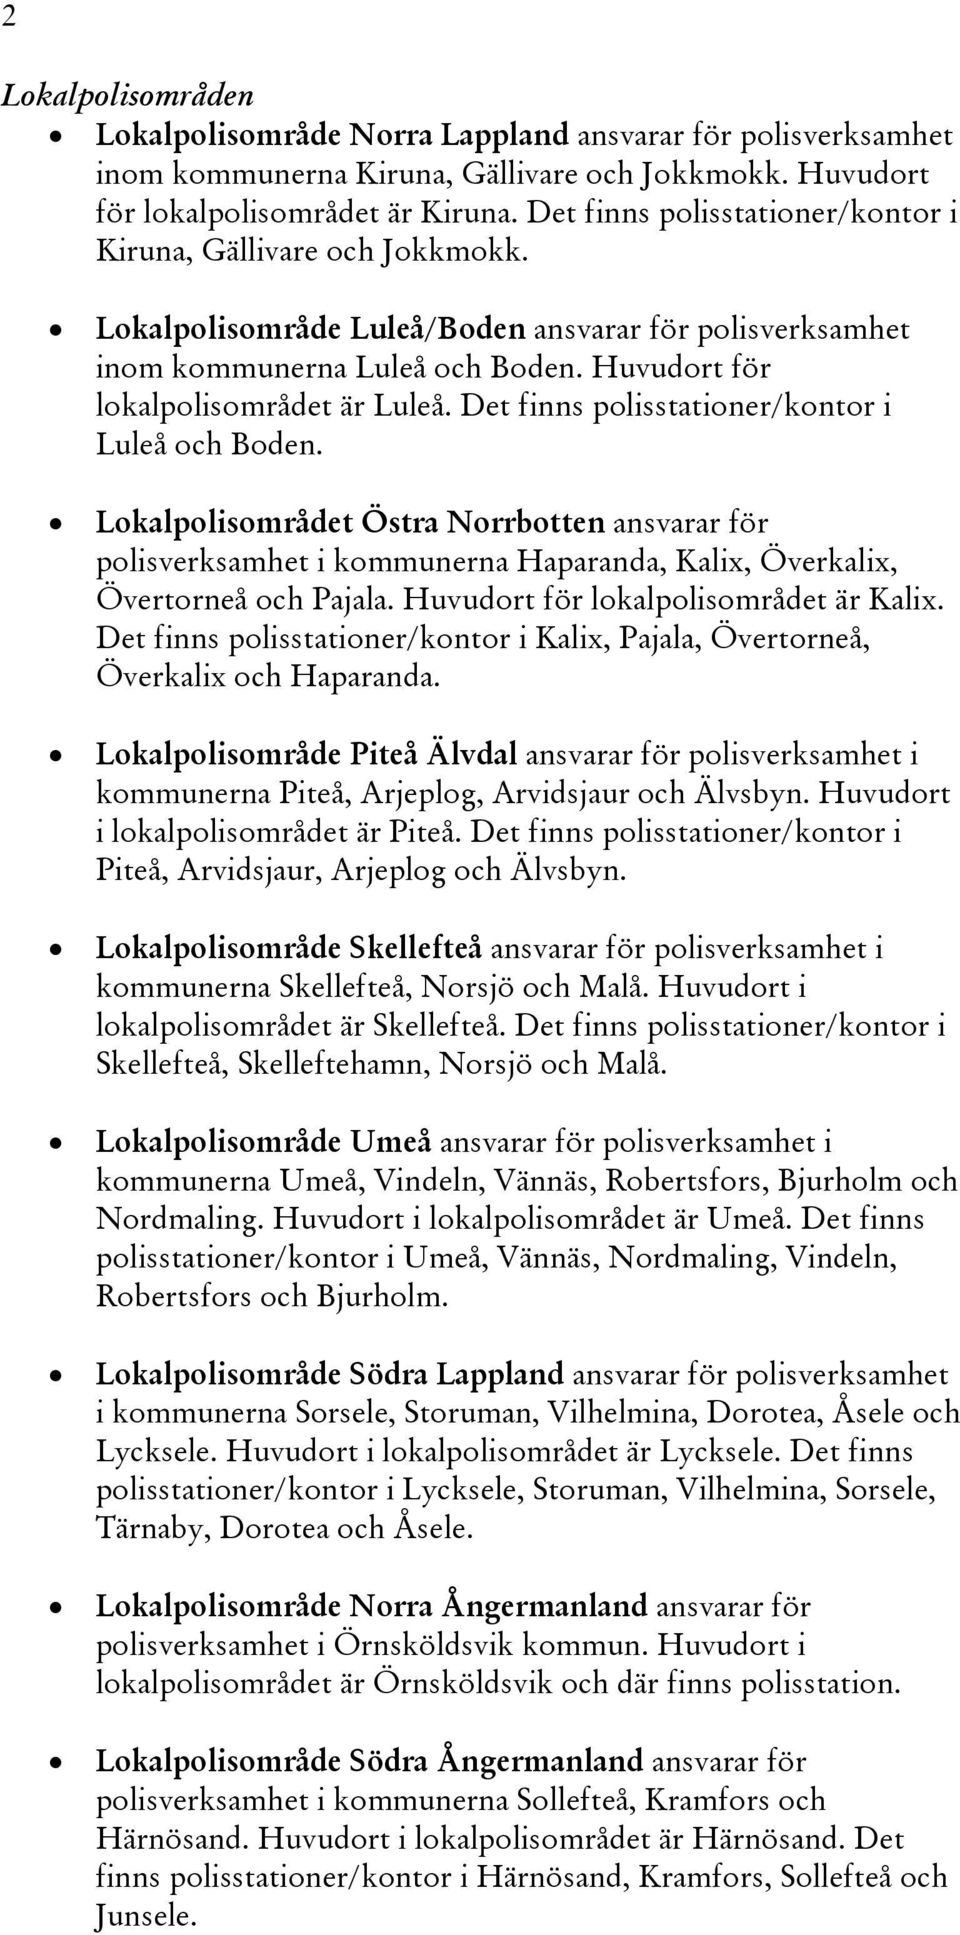 Det finns polisstationer/kontor i Luleå och Boden. Lokalpolisområdet Östra Norrbotten ansvarar för polisverksamhet i kommunerna Haparanda, Kalix, Överkalix, Övertorneå och Pajala.